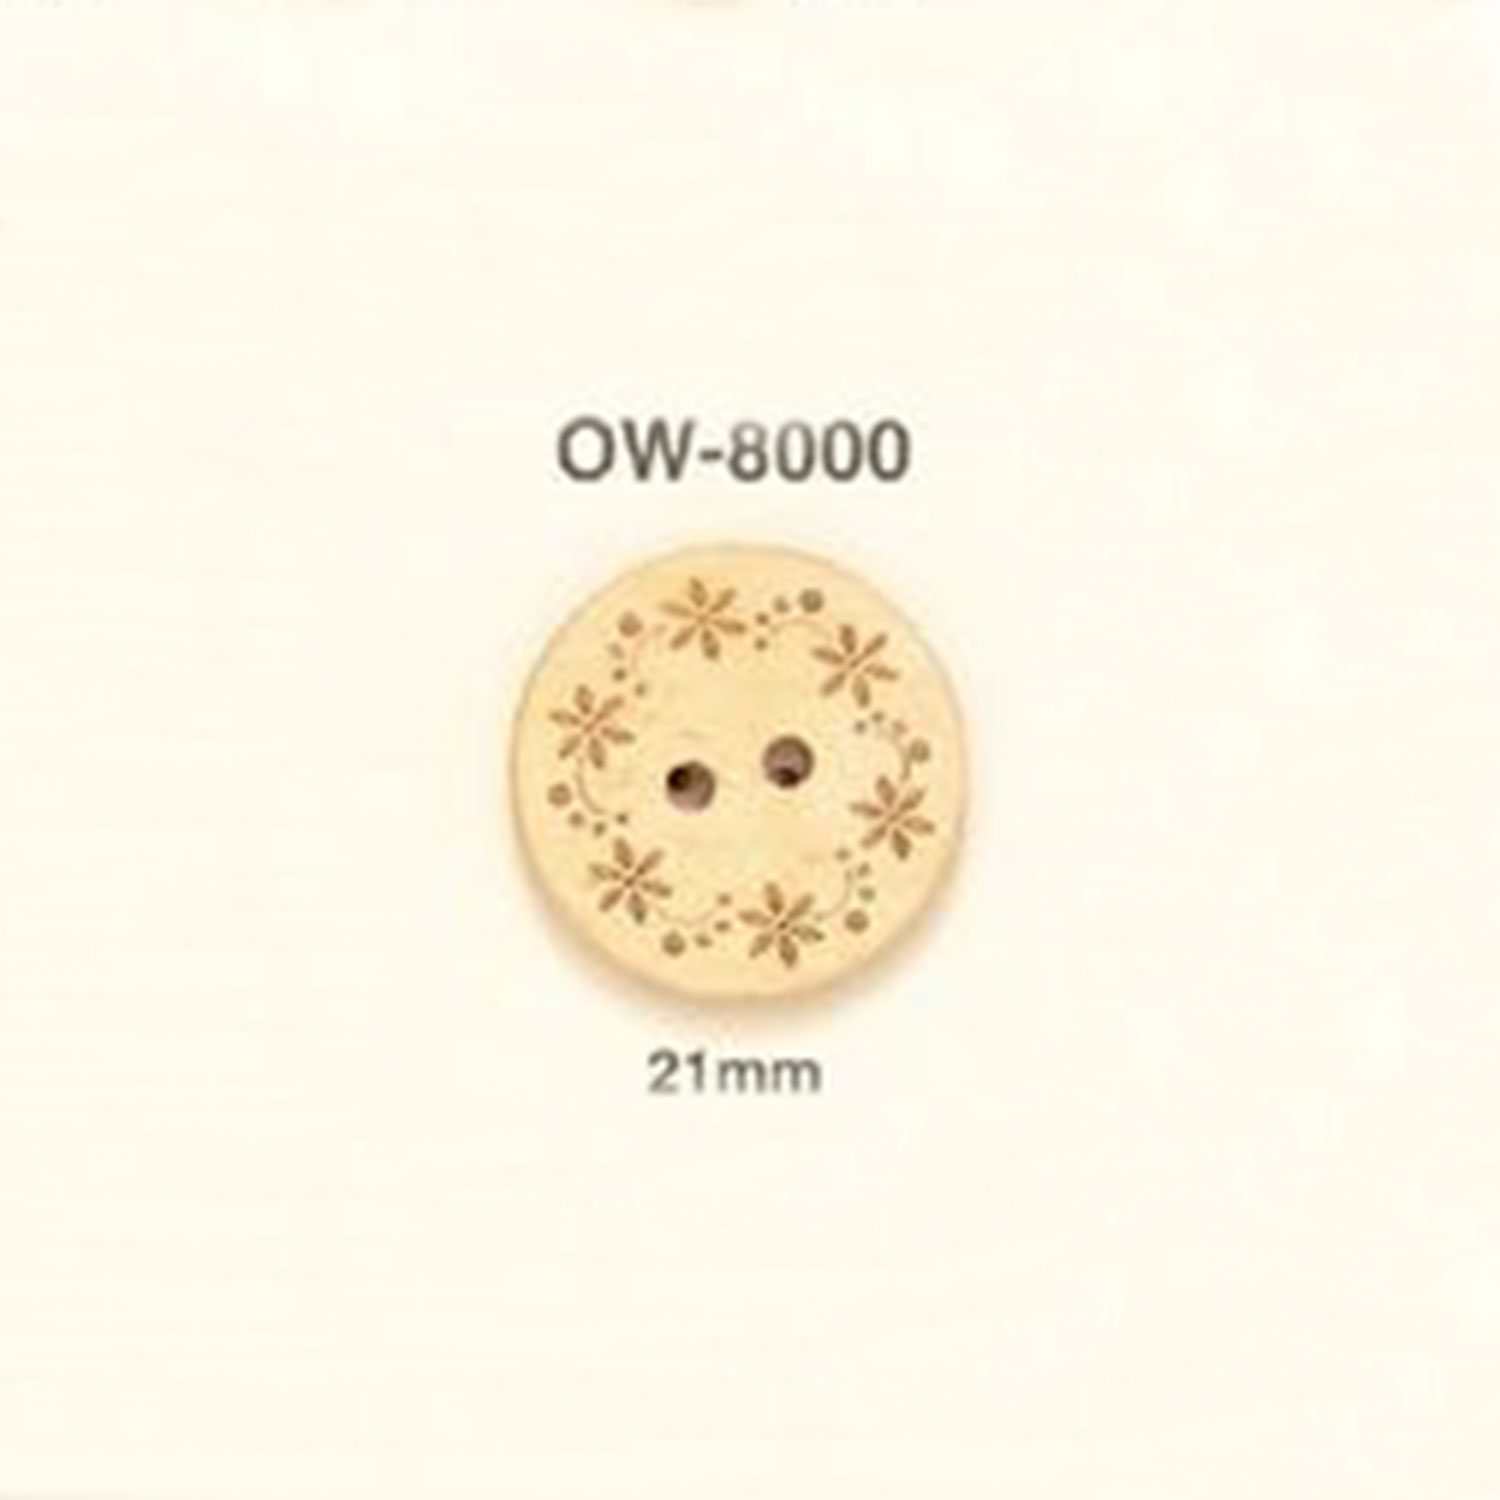 OW-8000 花卉图形元素木制纽扣 爱丽丝纽扣